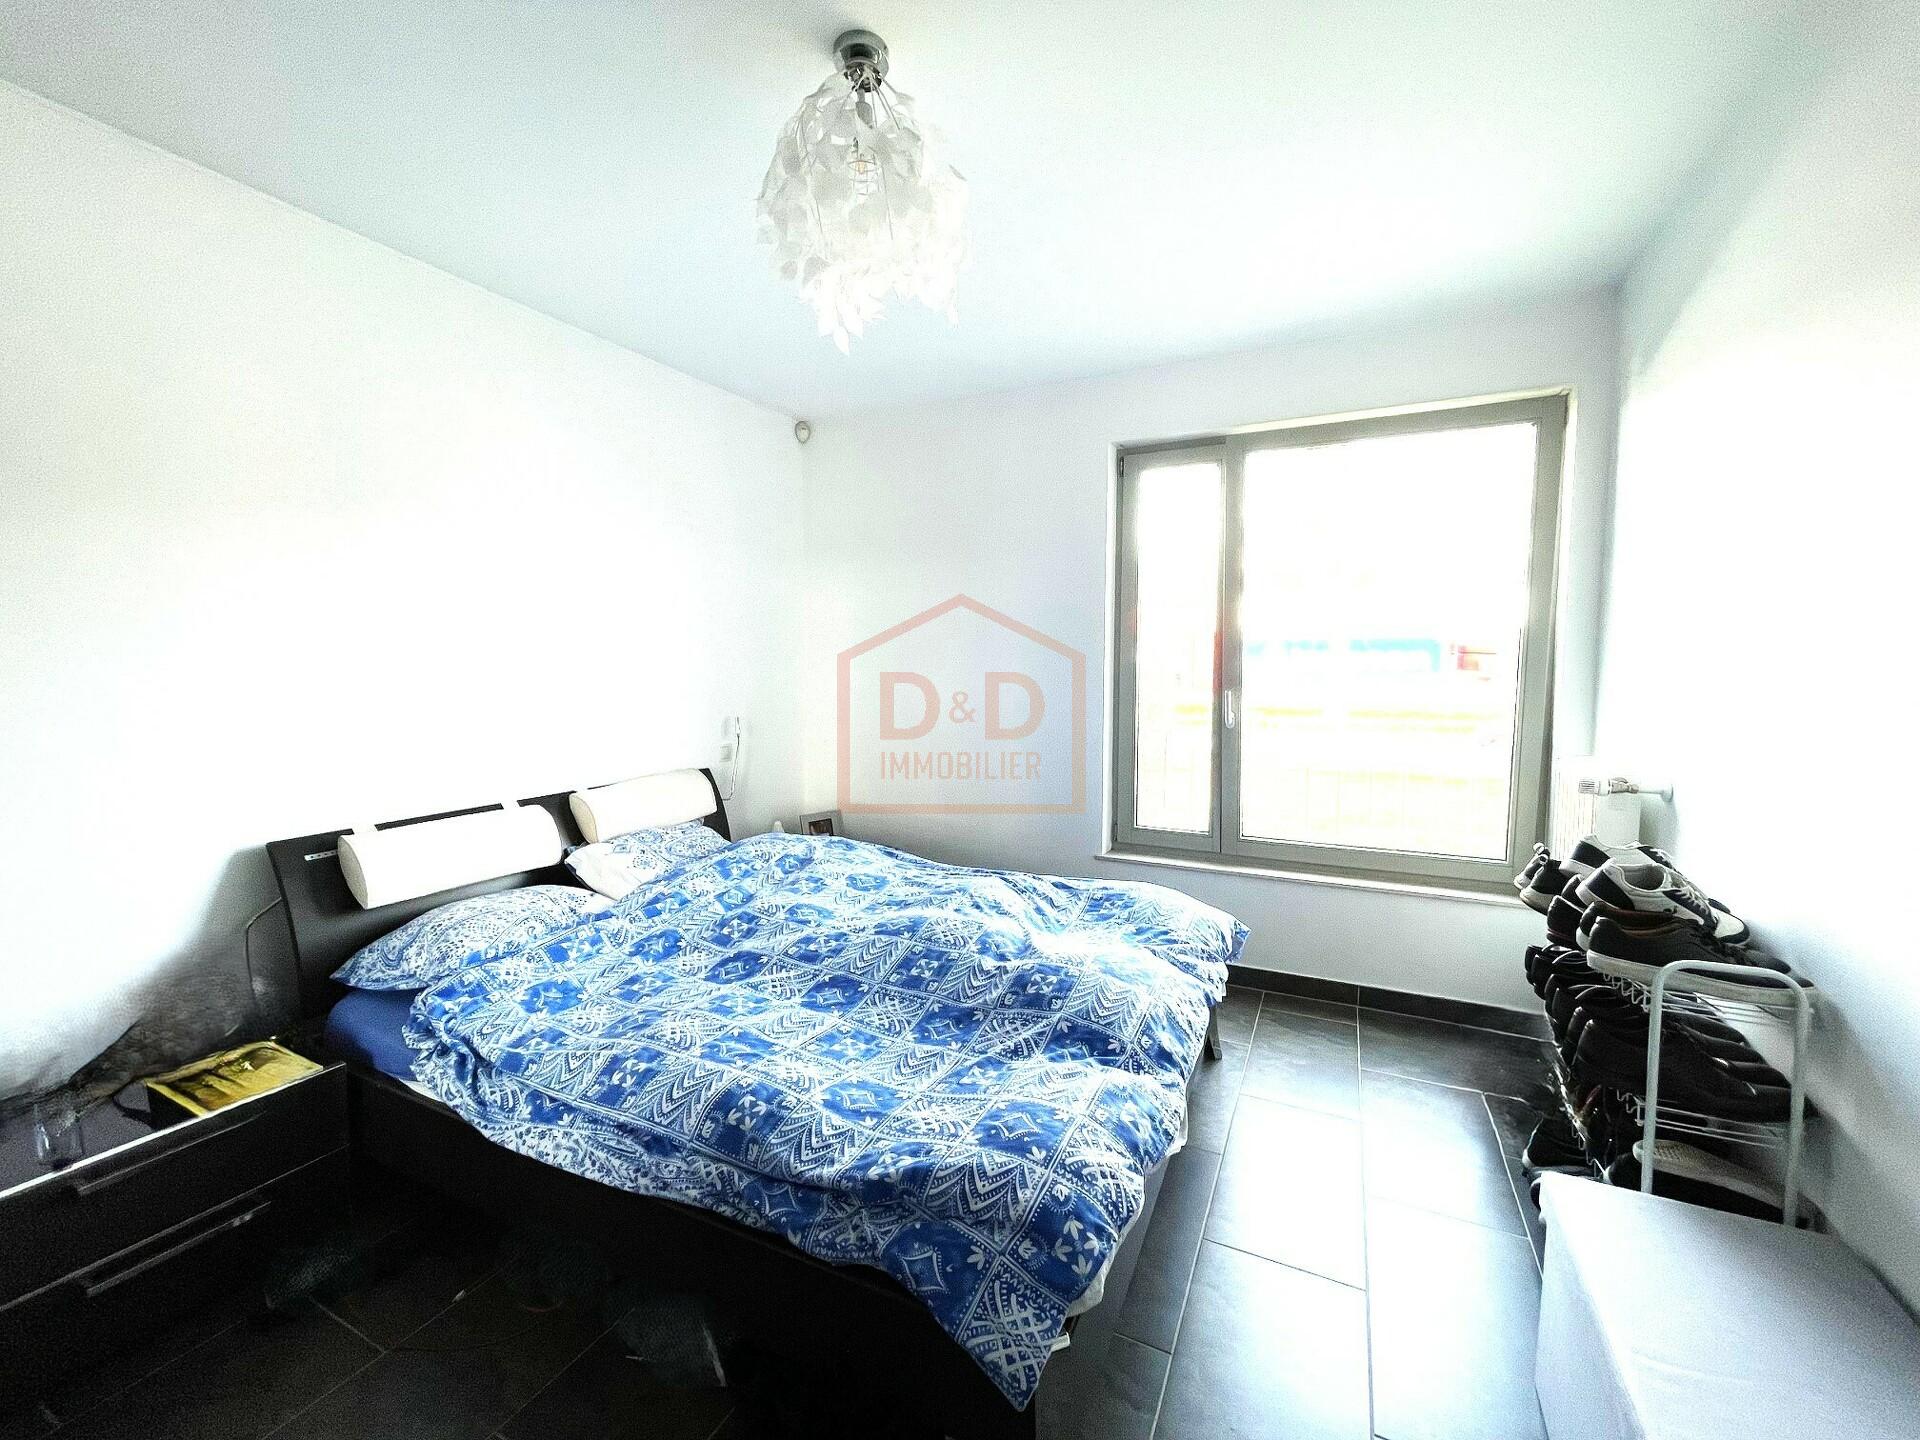 Appartement à Fentange, 75,34 m², 2 chambres, 1 salle de bain, 1 950 €/mois